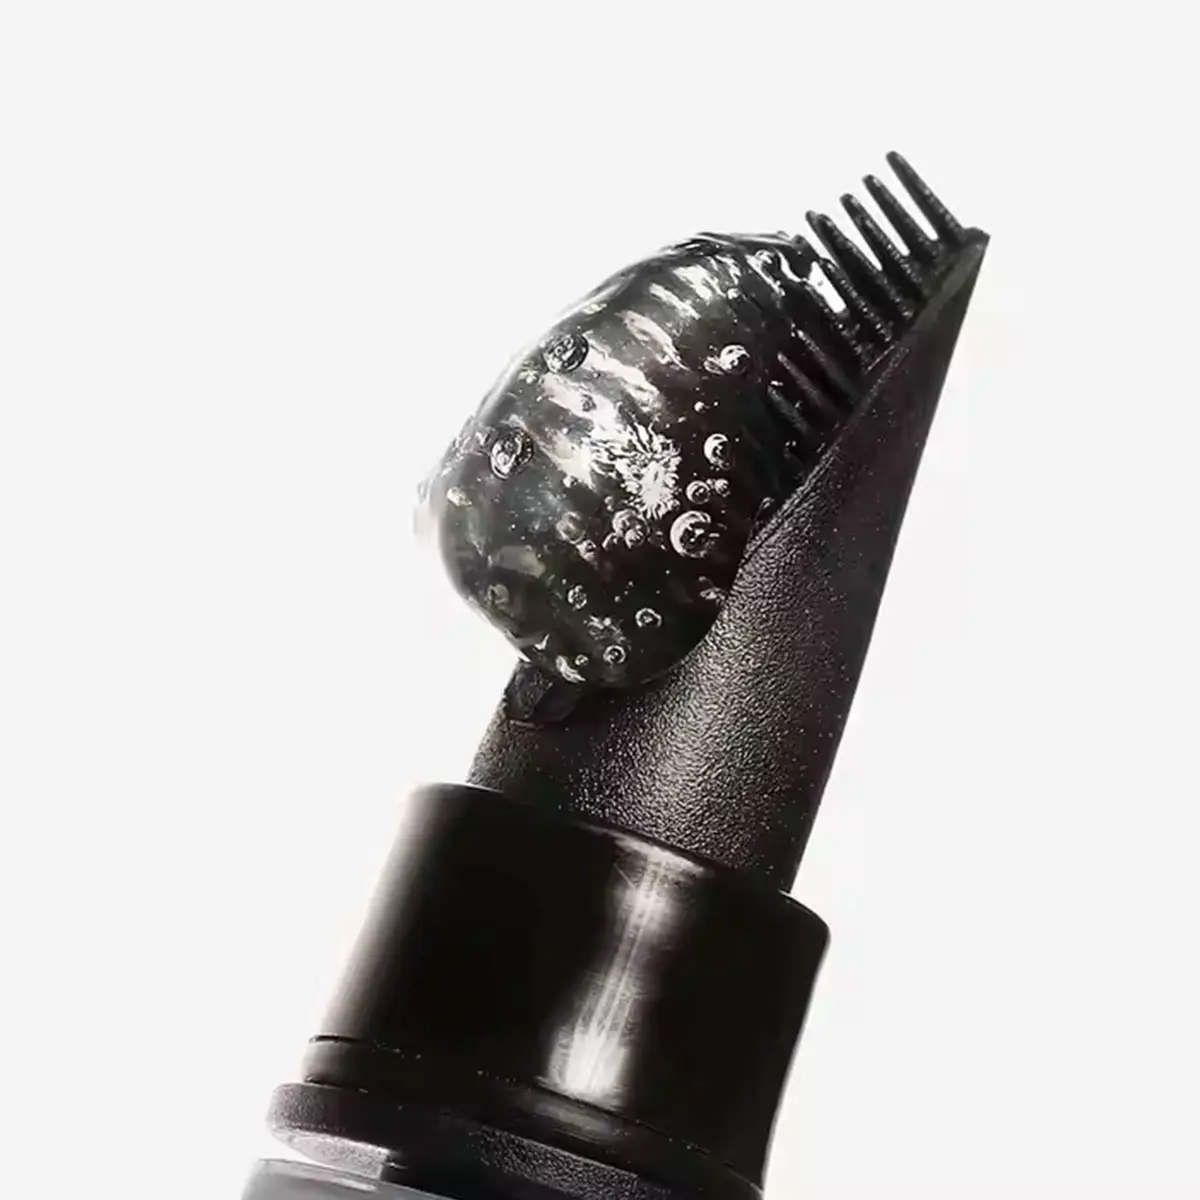 قلم جل مكياج بعلامة خاصة قلم مكياج للحواجب نباتي ثابت للحواجب سائل مقاوم للماء مع فرشاة